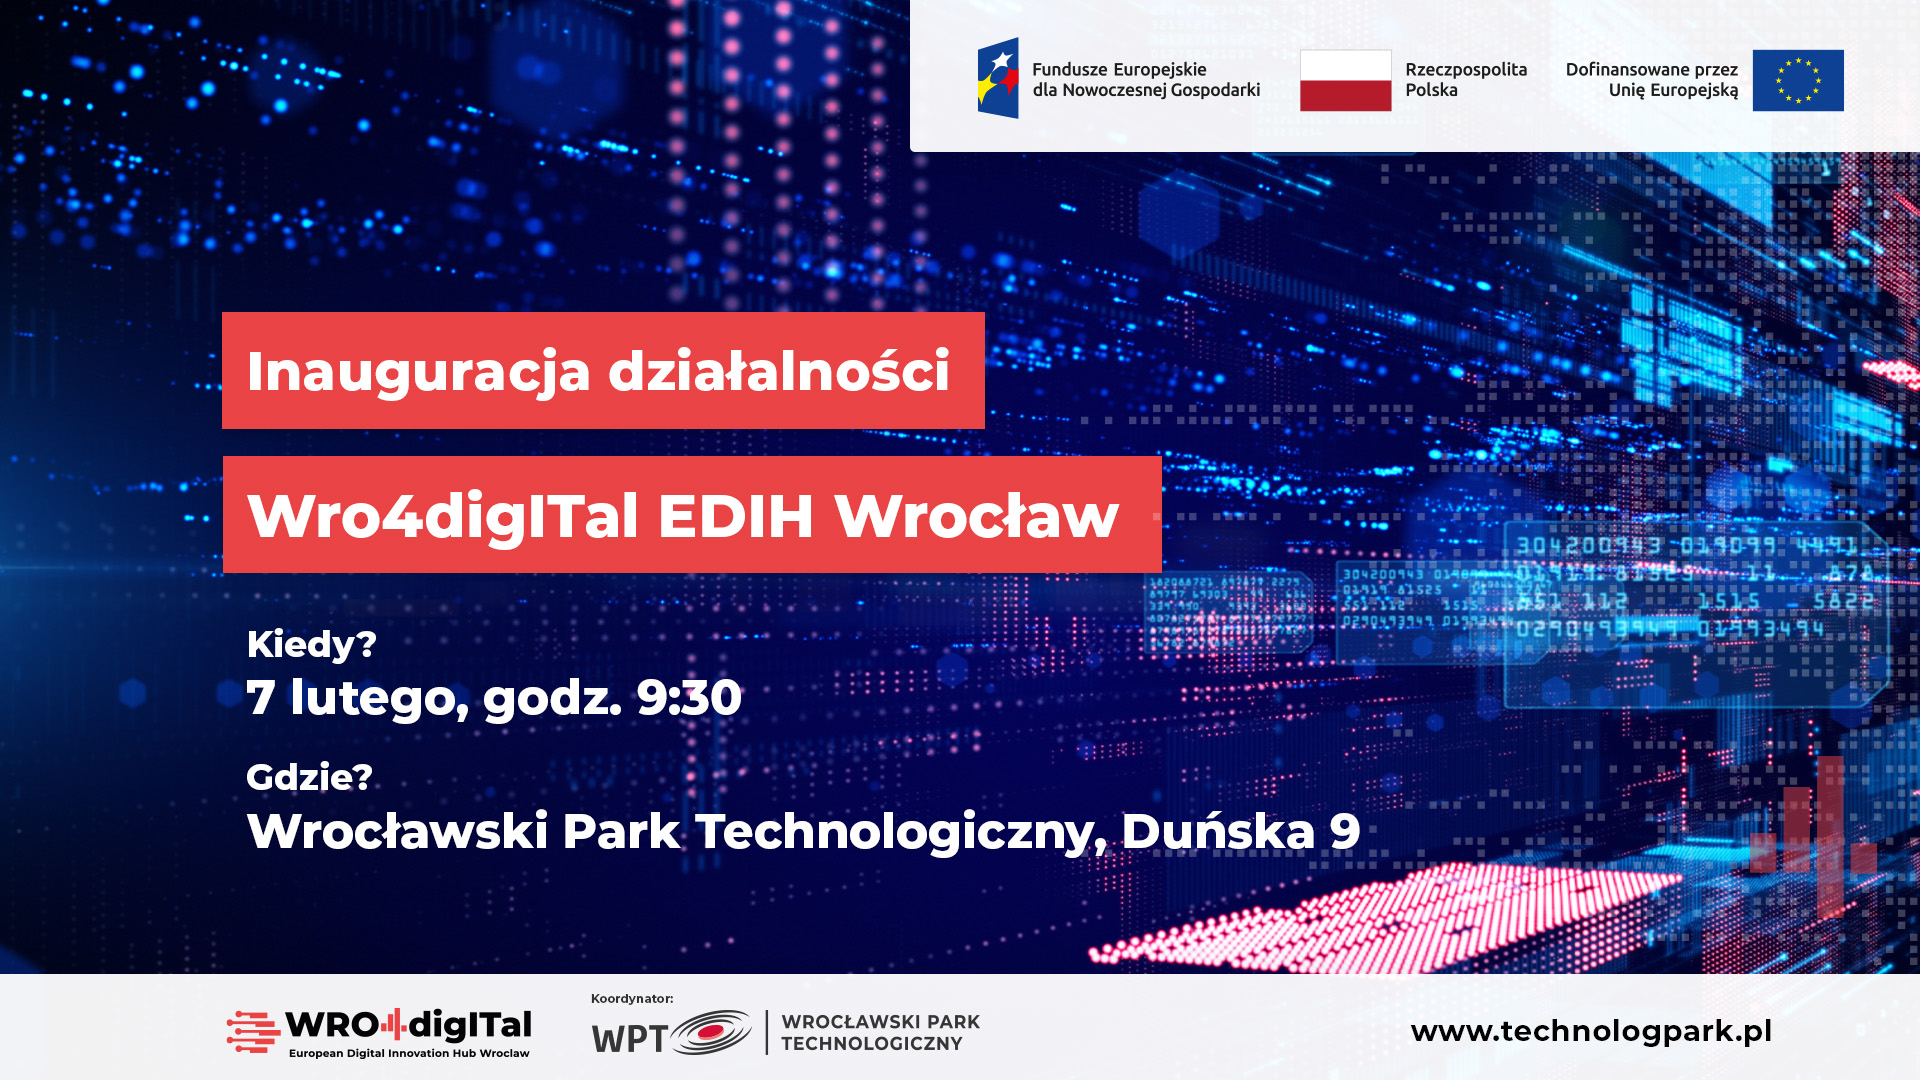 Konferencja inaugurująca działalność WRO4digITal EDIH Wrocław!